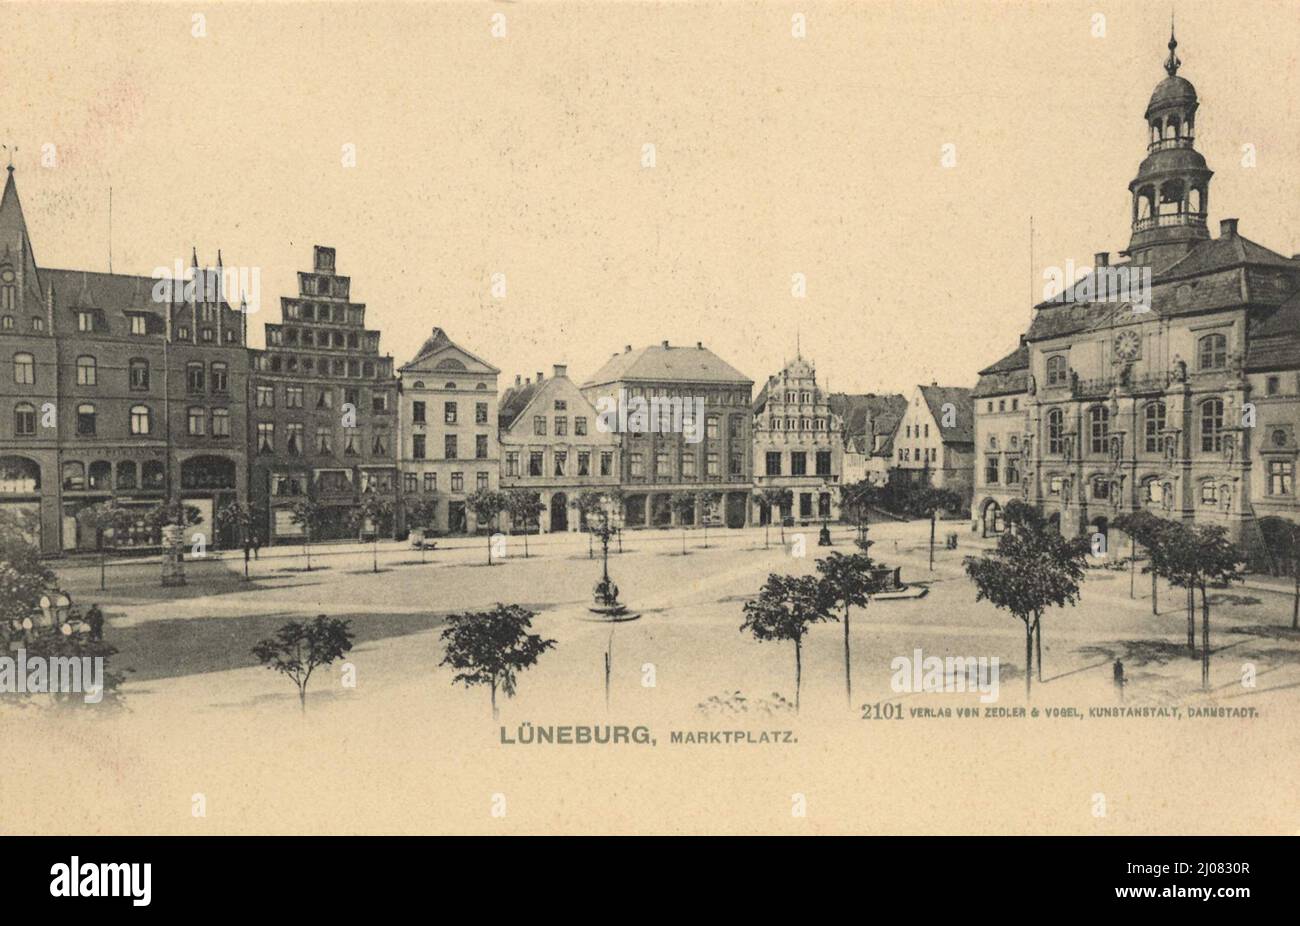 Marktplatz von Lüneburg, Niedersachsen, Deutschland, Ansicht um ca 1910, digitale Reproduktion einer historischen Postkarte, public domain, aus der damaligen Zeit, genaues Datum unbekannt Stock Photo